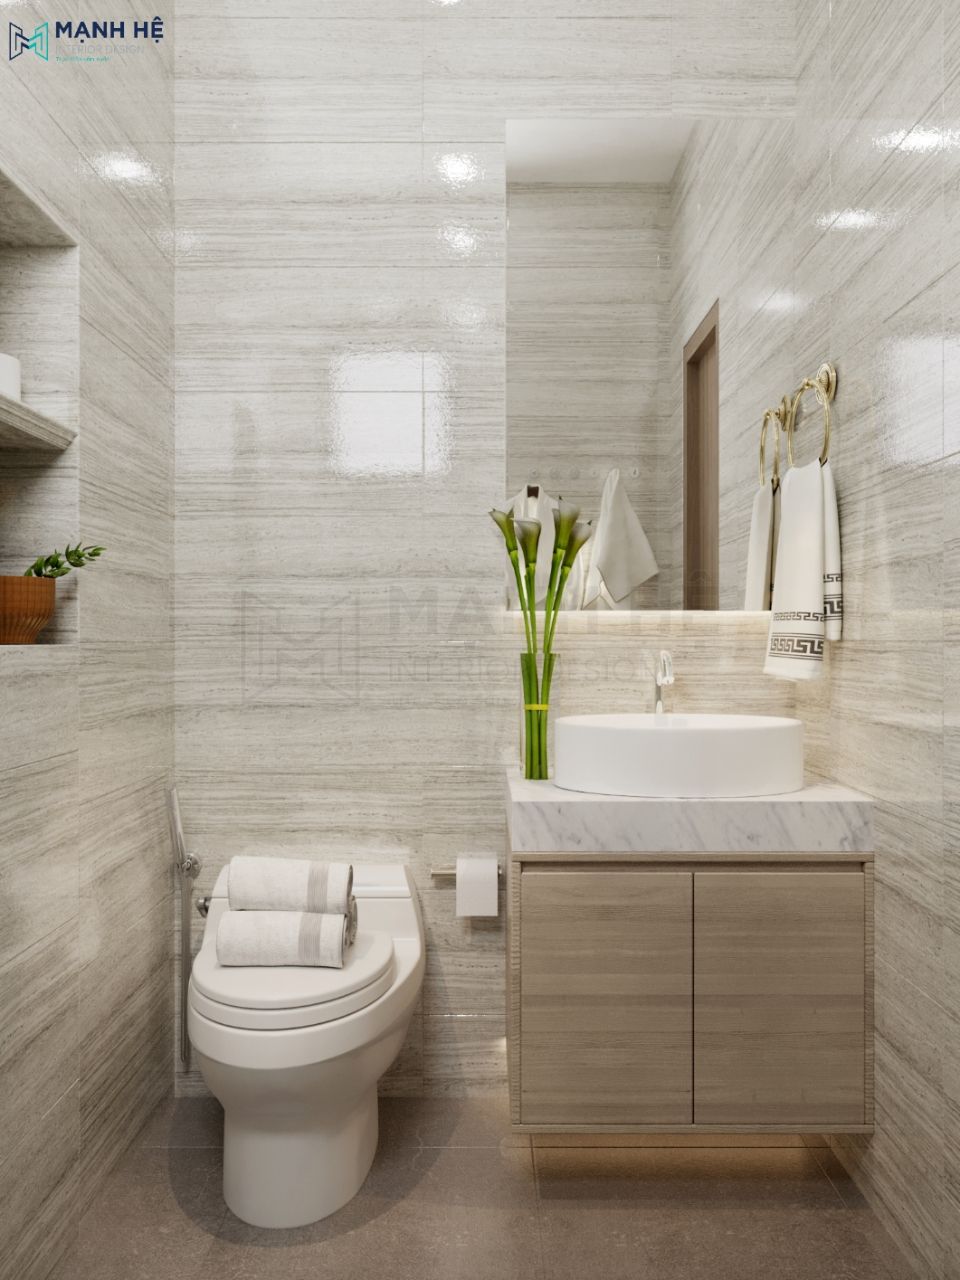 Nội thất nhà vệ sinh sang trọng với tông màu ấm áp